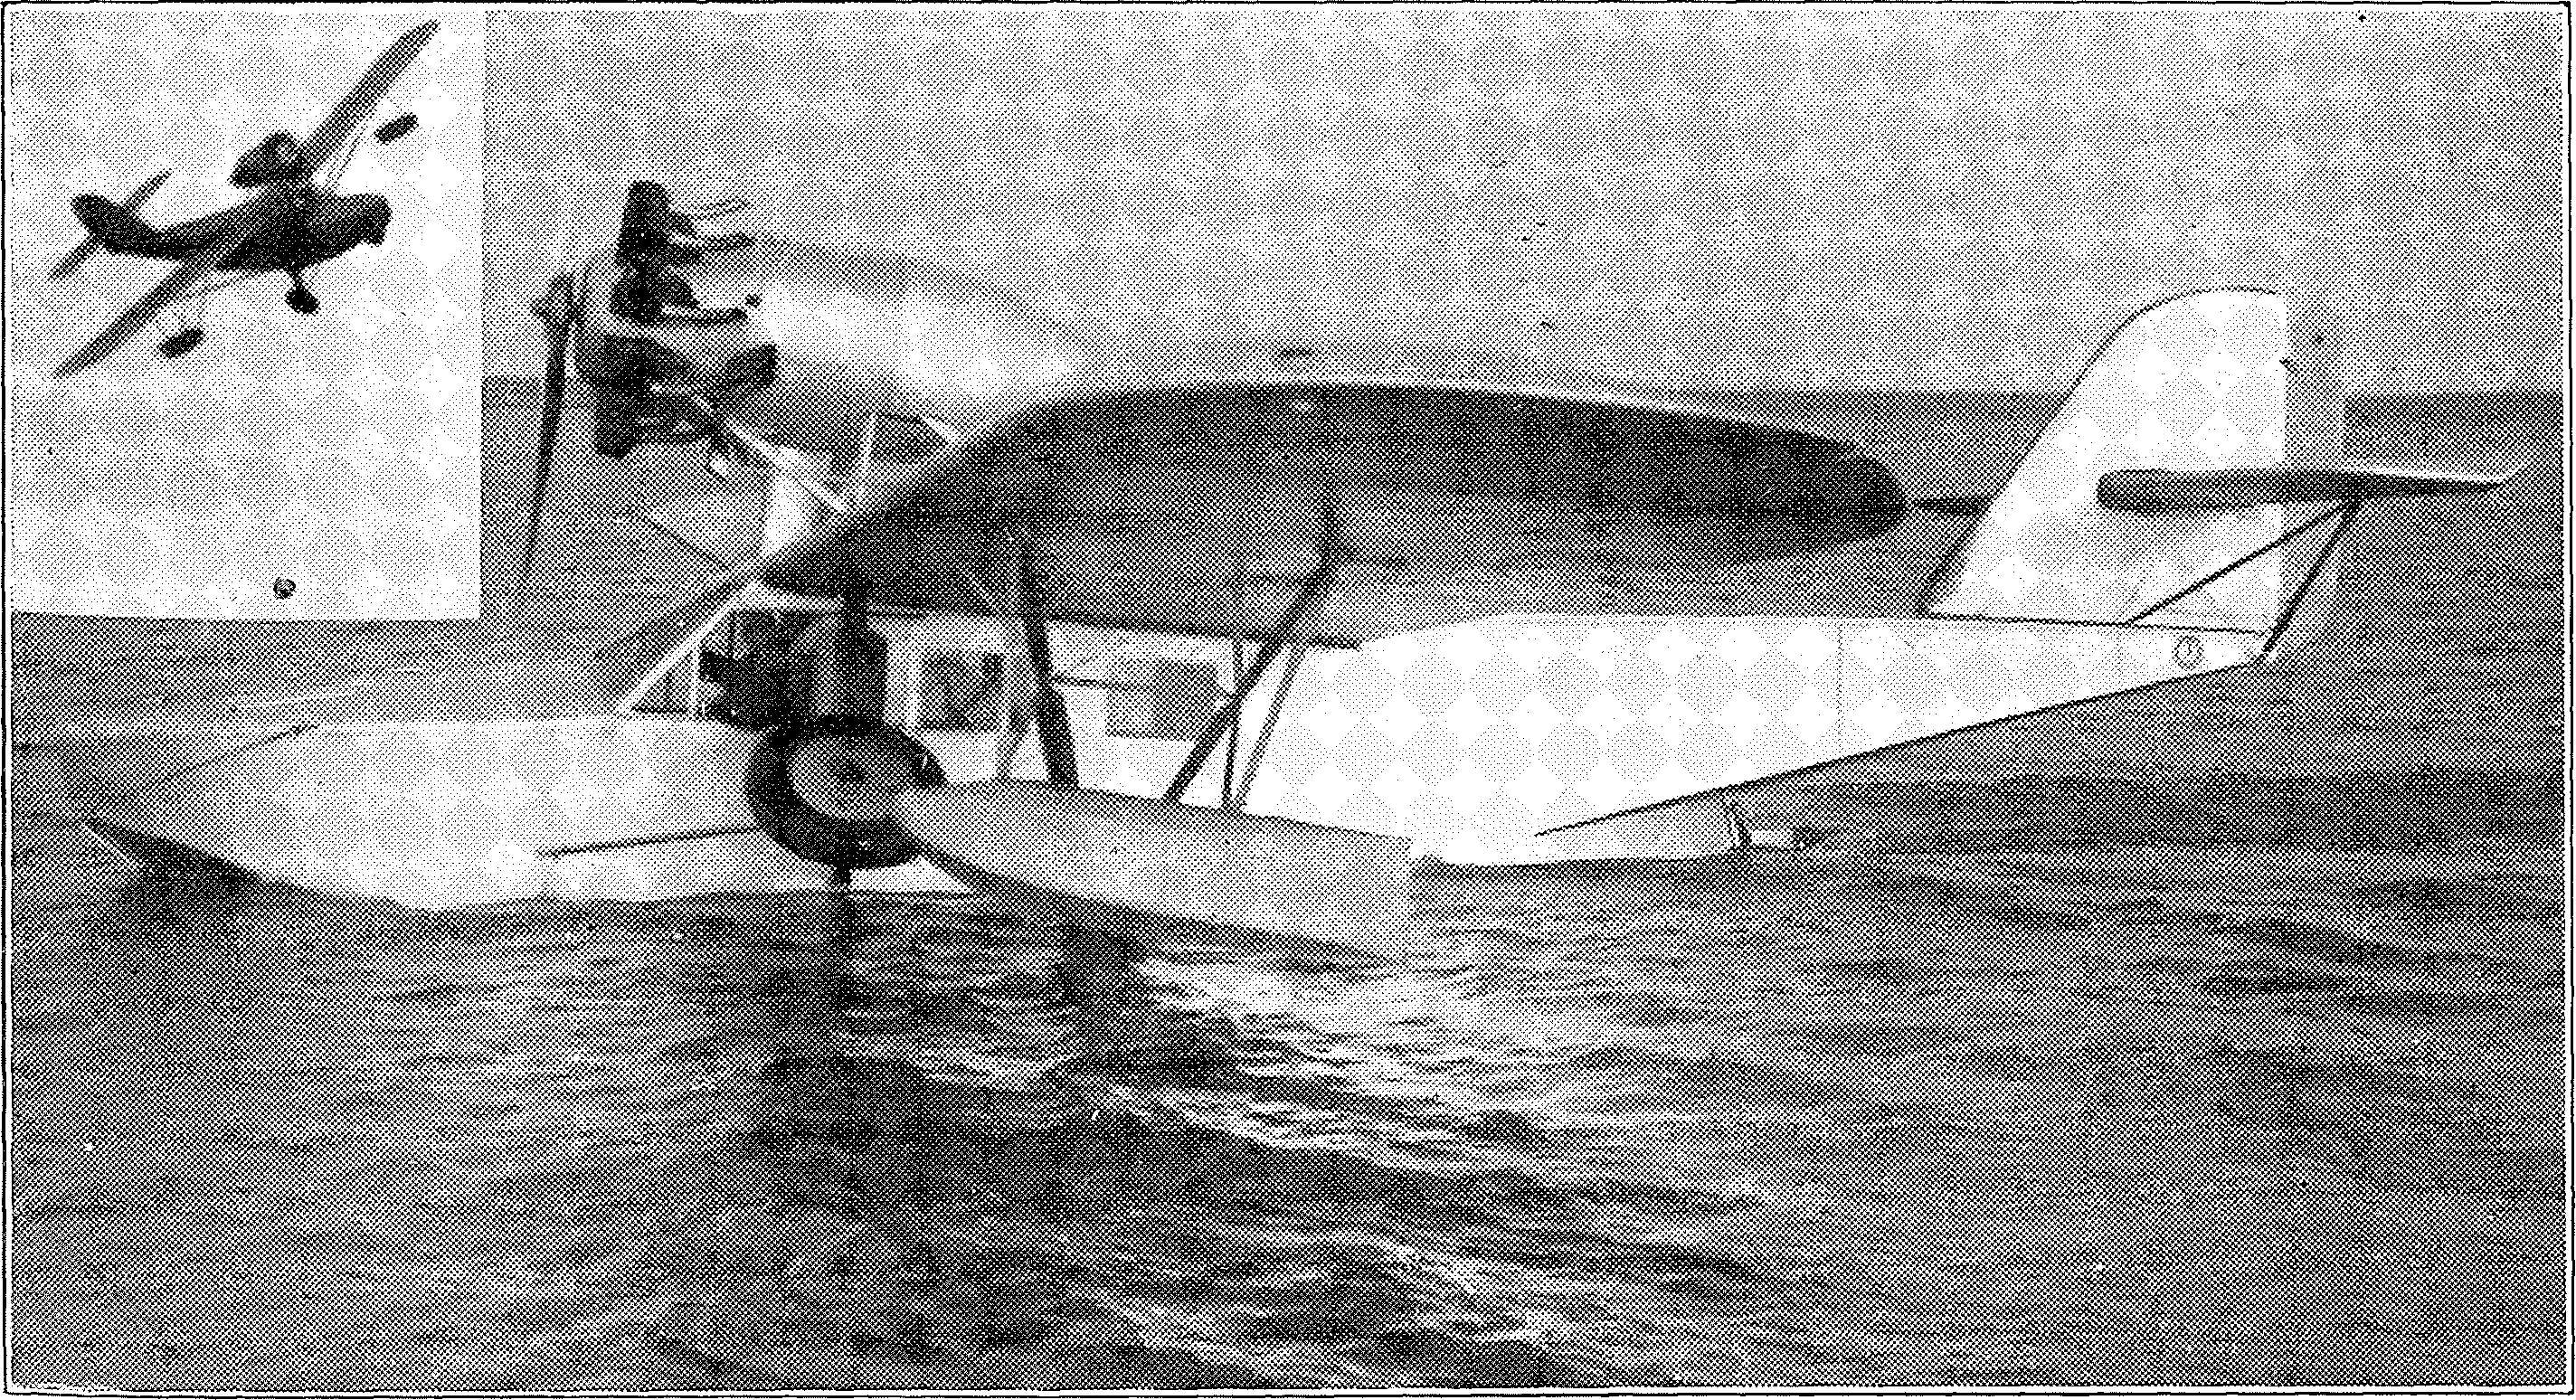 Segelflug, Motorflug und Modellflug sowie Luftfahrt und Luftverkehr im Deutschen Reich (Weimarer Republik) im Jahre 1931